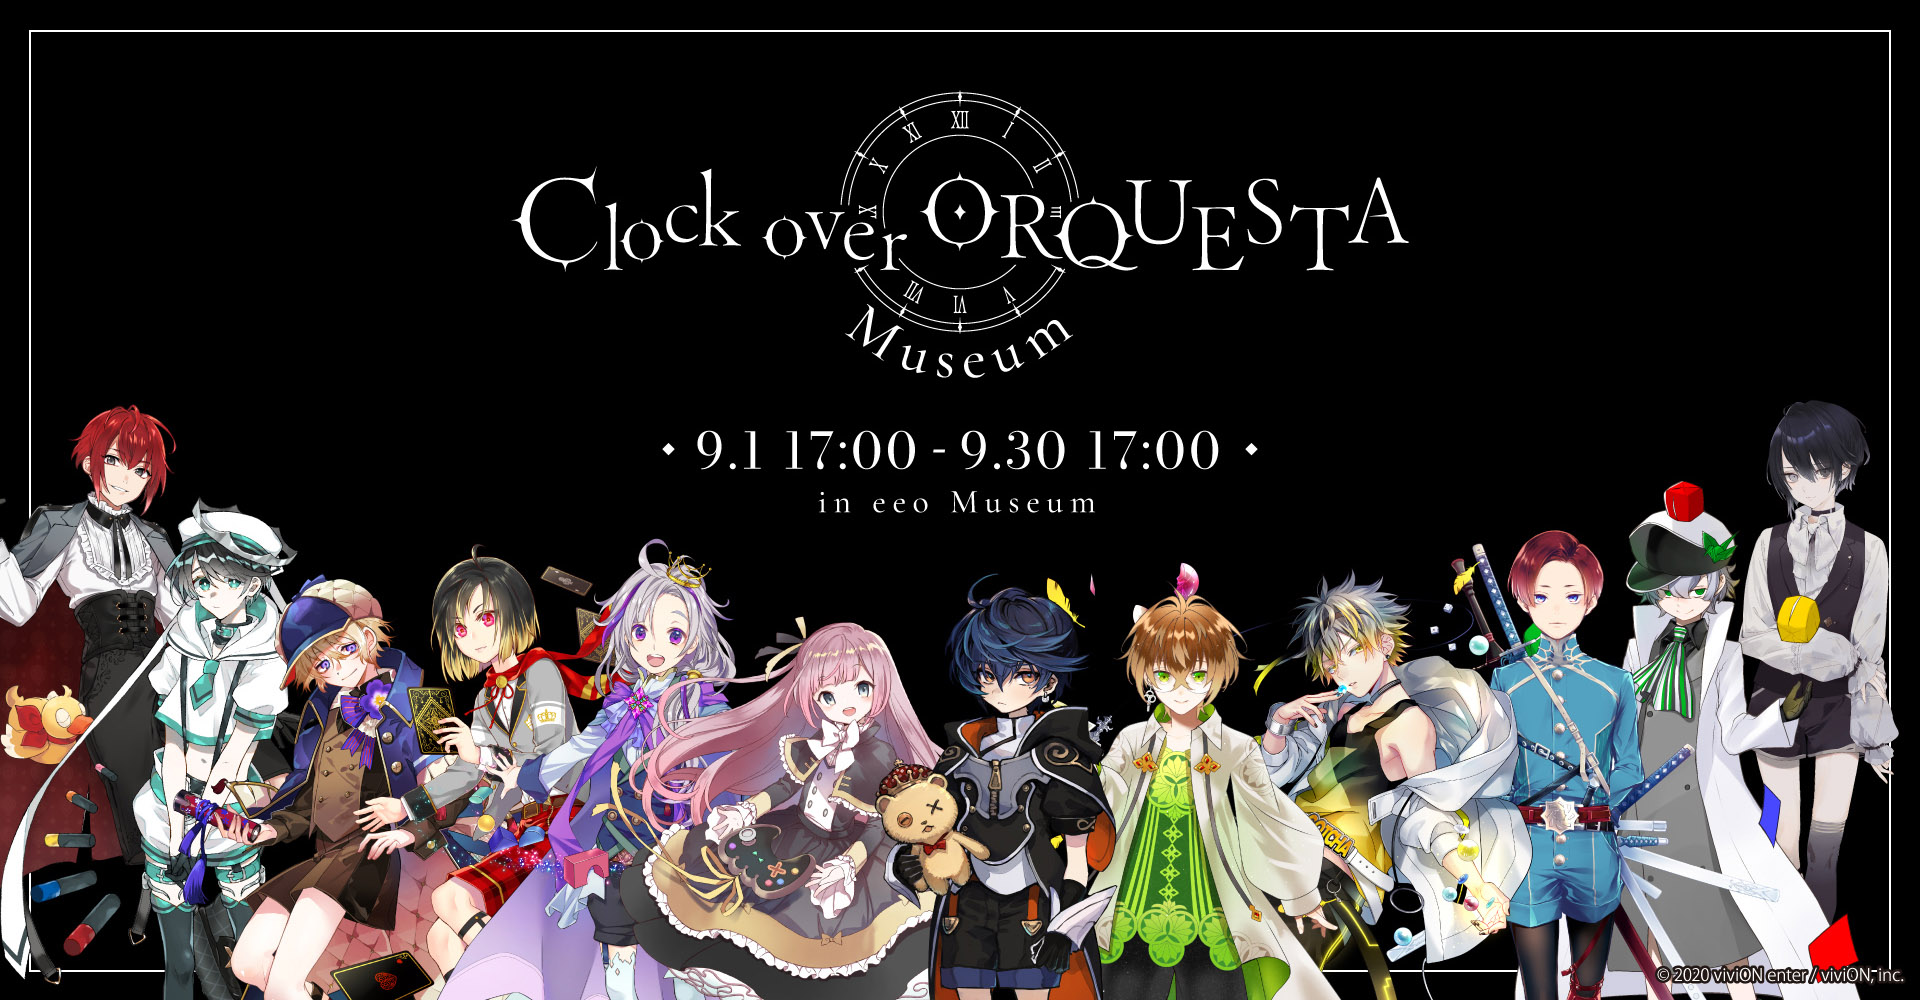 Clock over ORQUESTA Museum